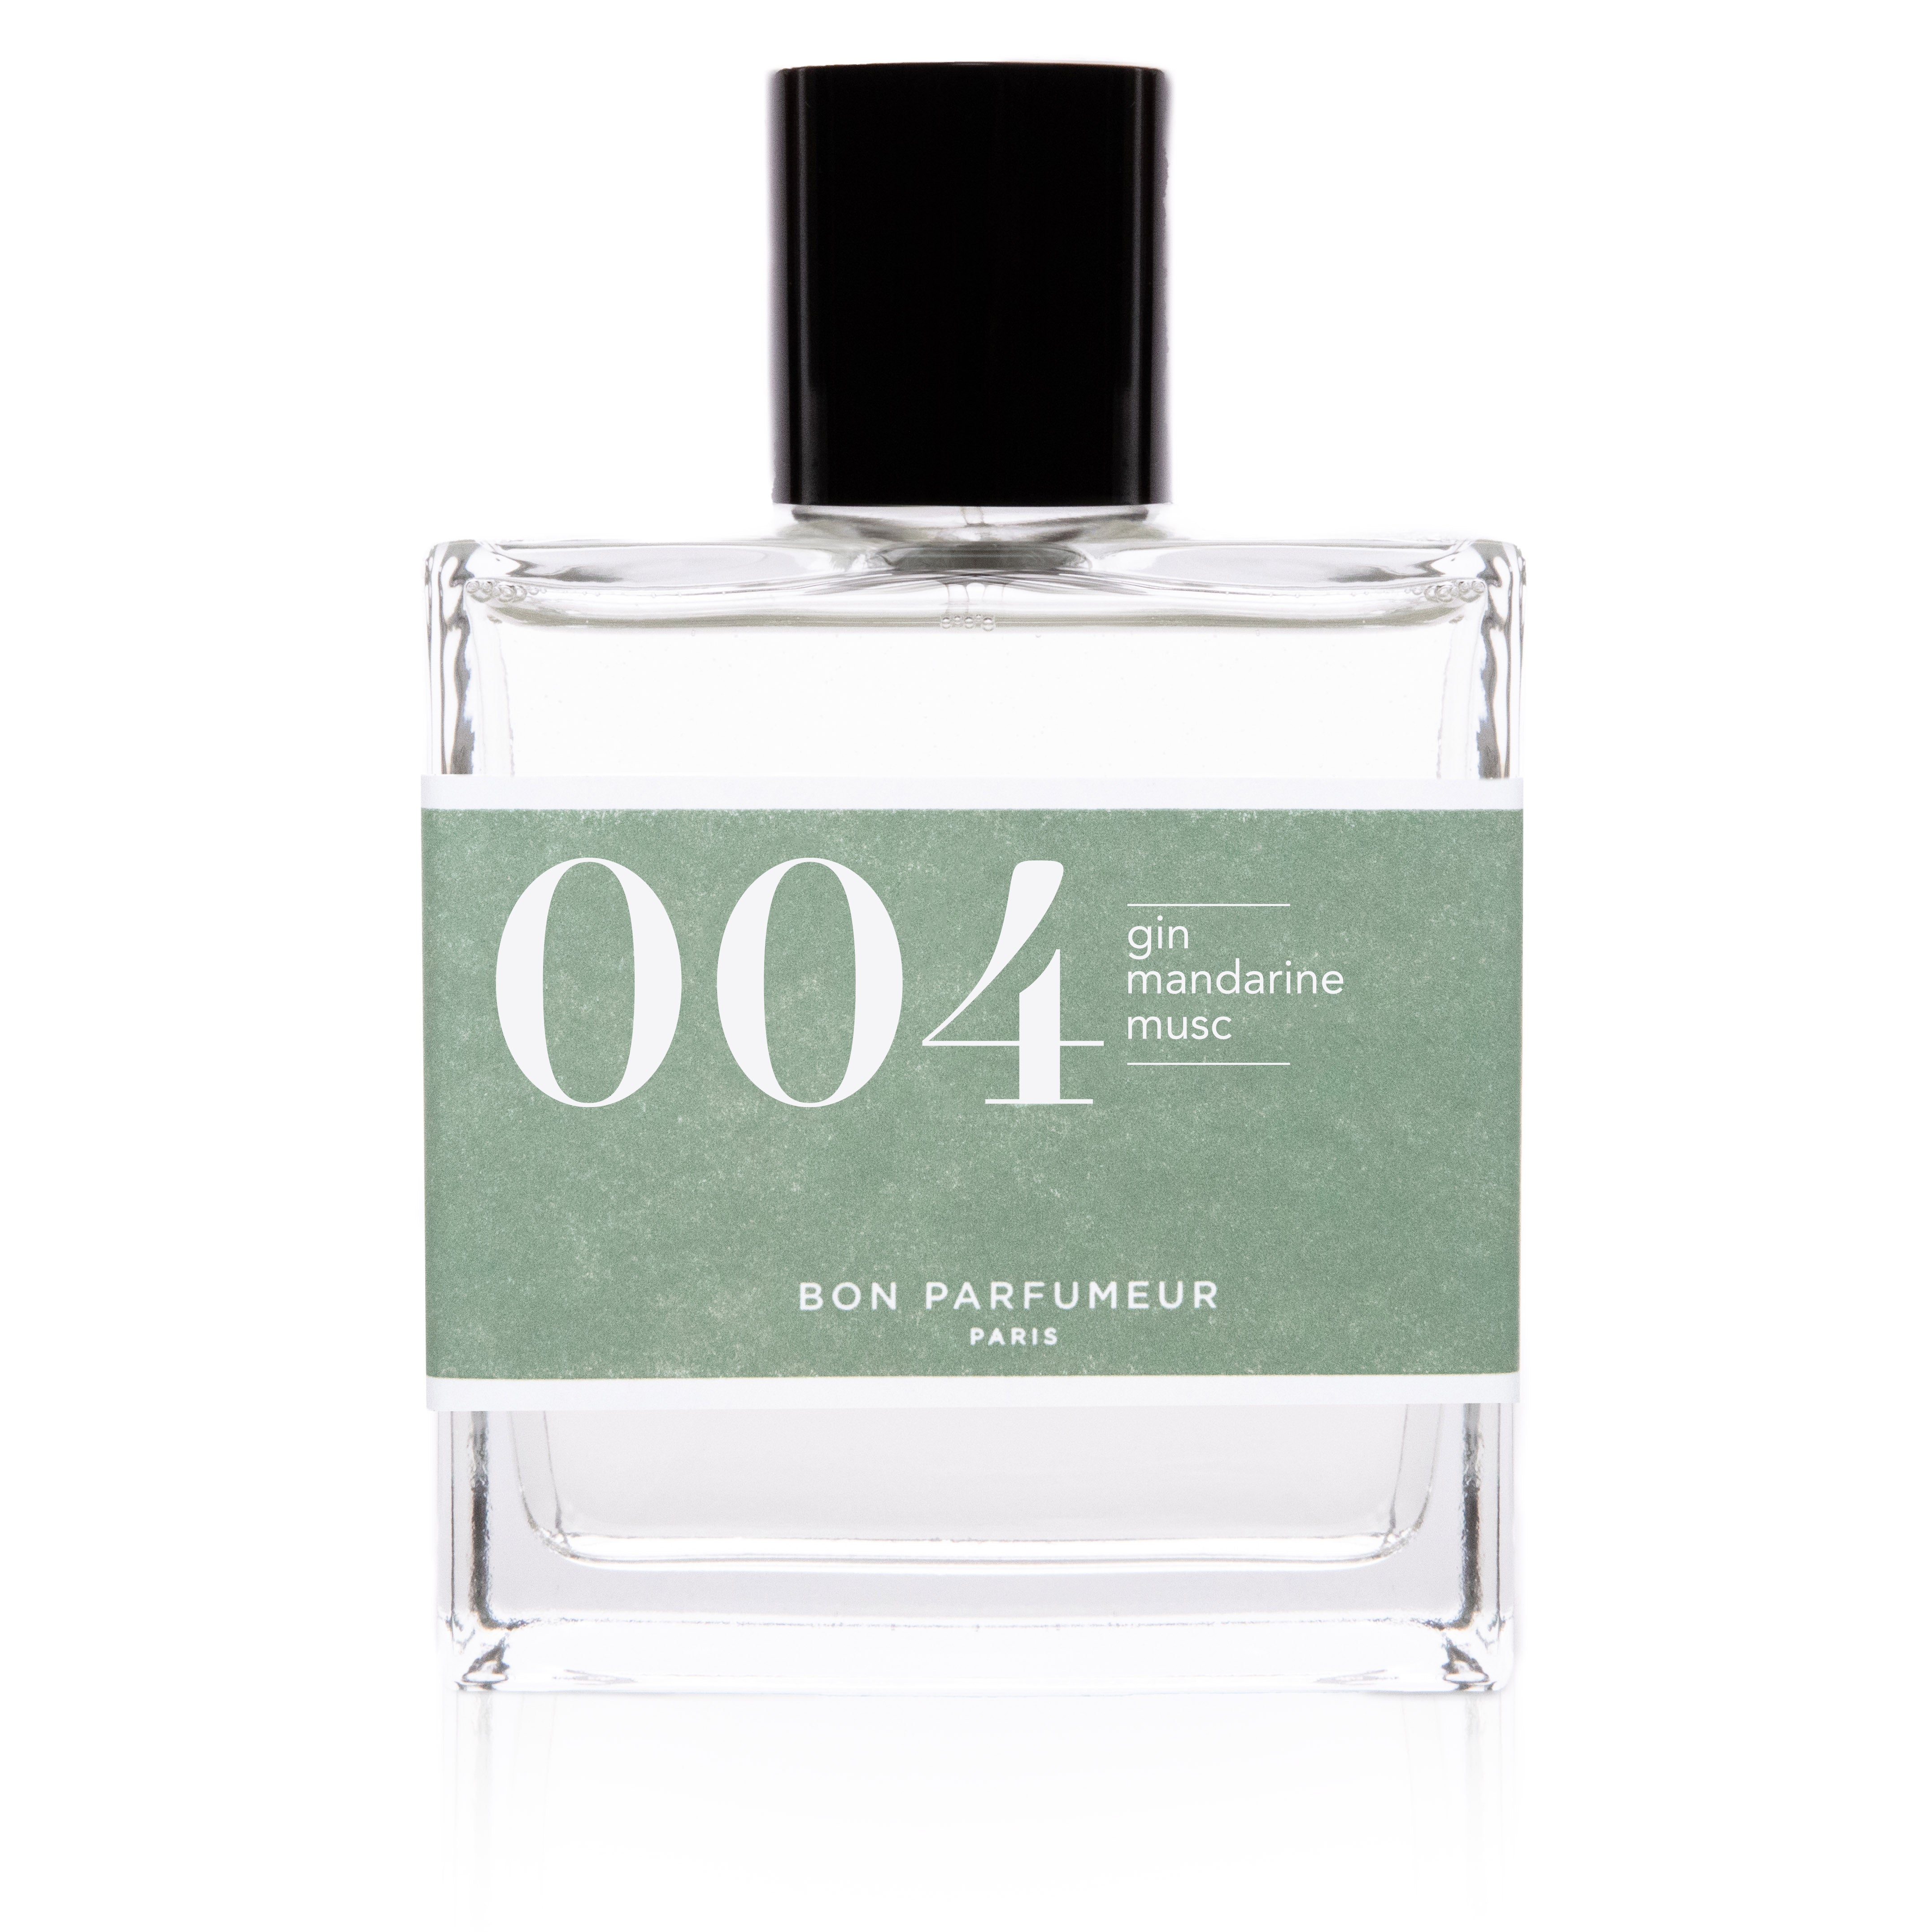 Bon Parfumeur - Les Classiques 004